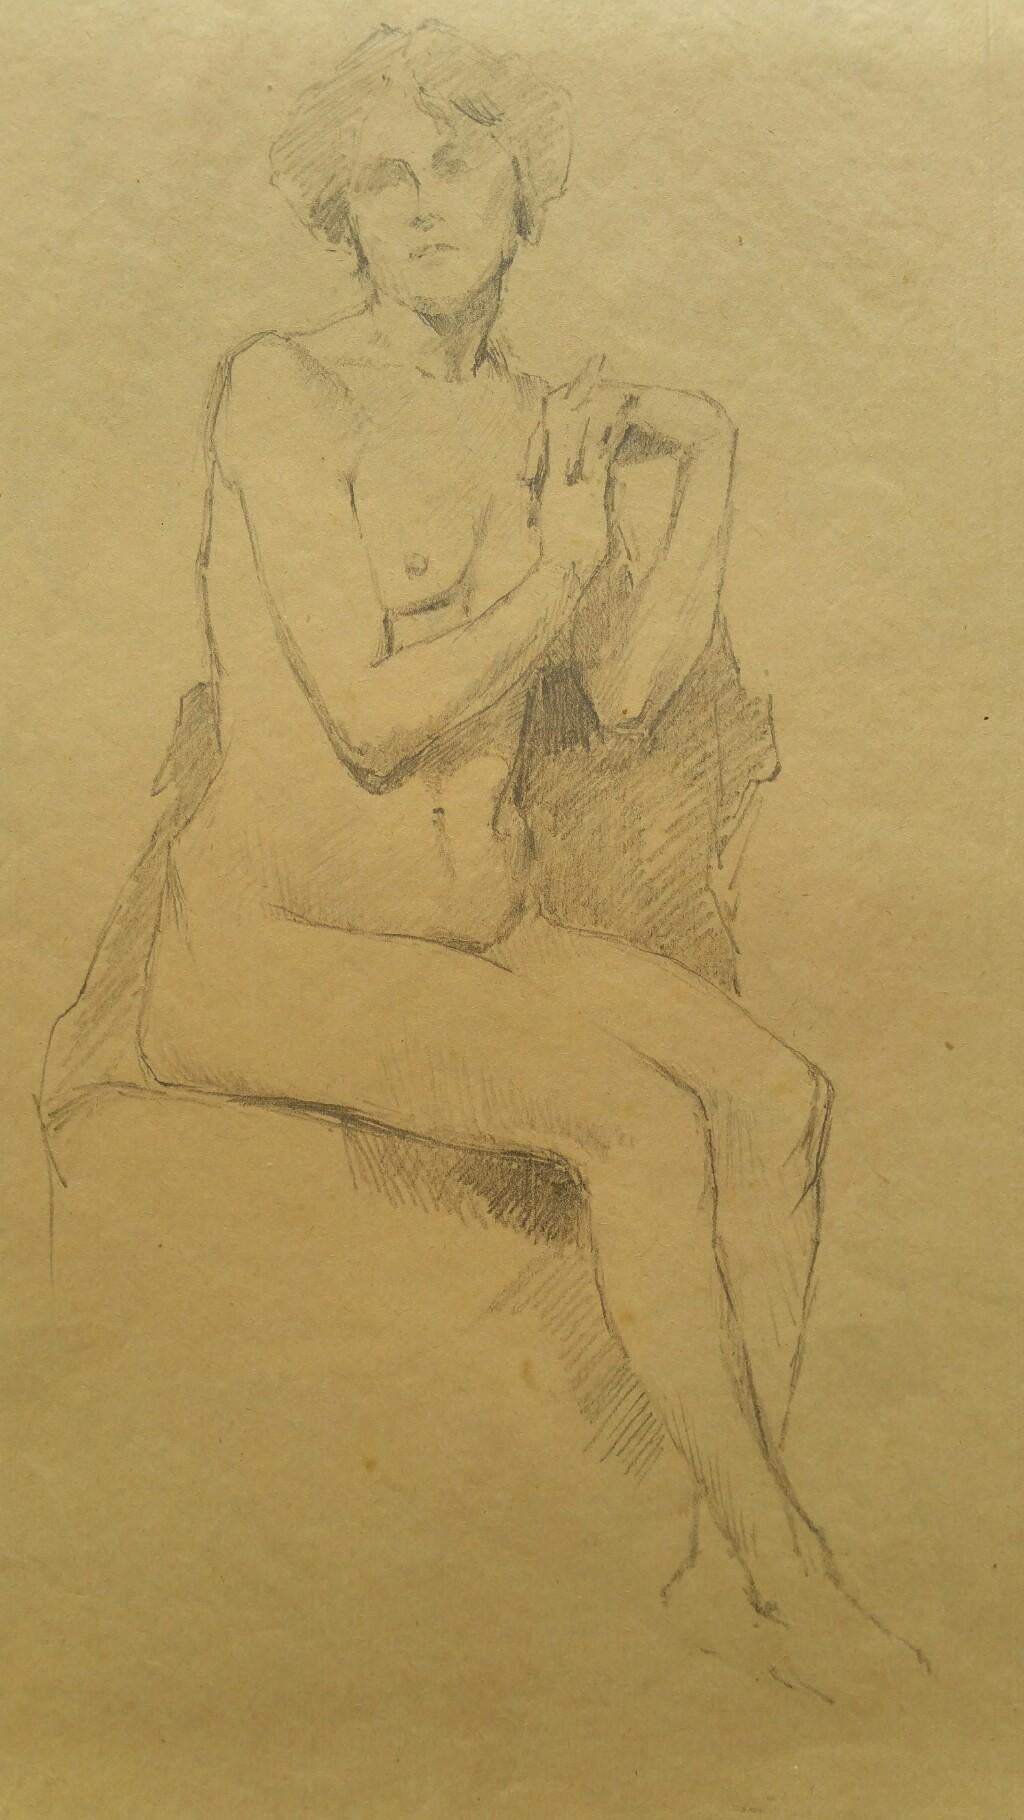 Esquisse au graphite d'une femme nue, assise (avec image supplémentaire jointe) 
par Henry George Moon (britannique, 1857-1905)
sur papier d'artiste fin jauni, non encadré
mesures : feuille 14.75 x 10 pouces 

provenance : de la succession de